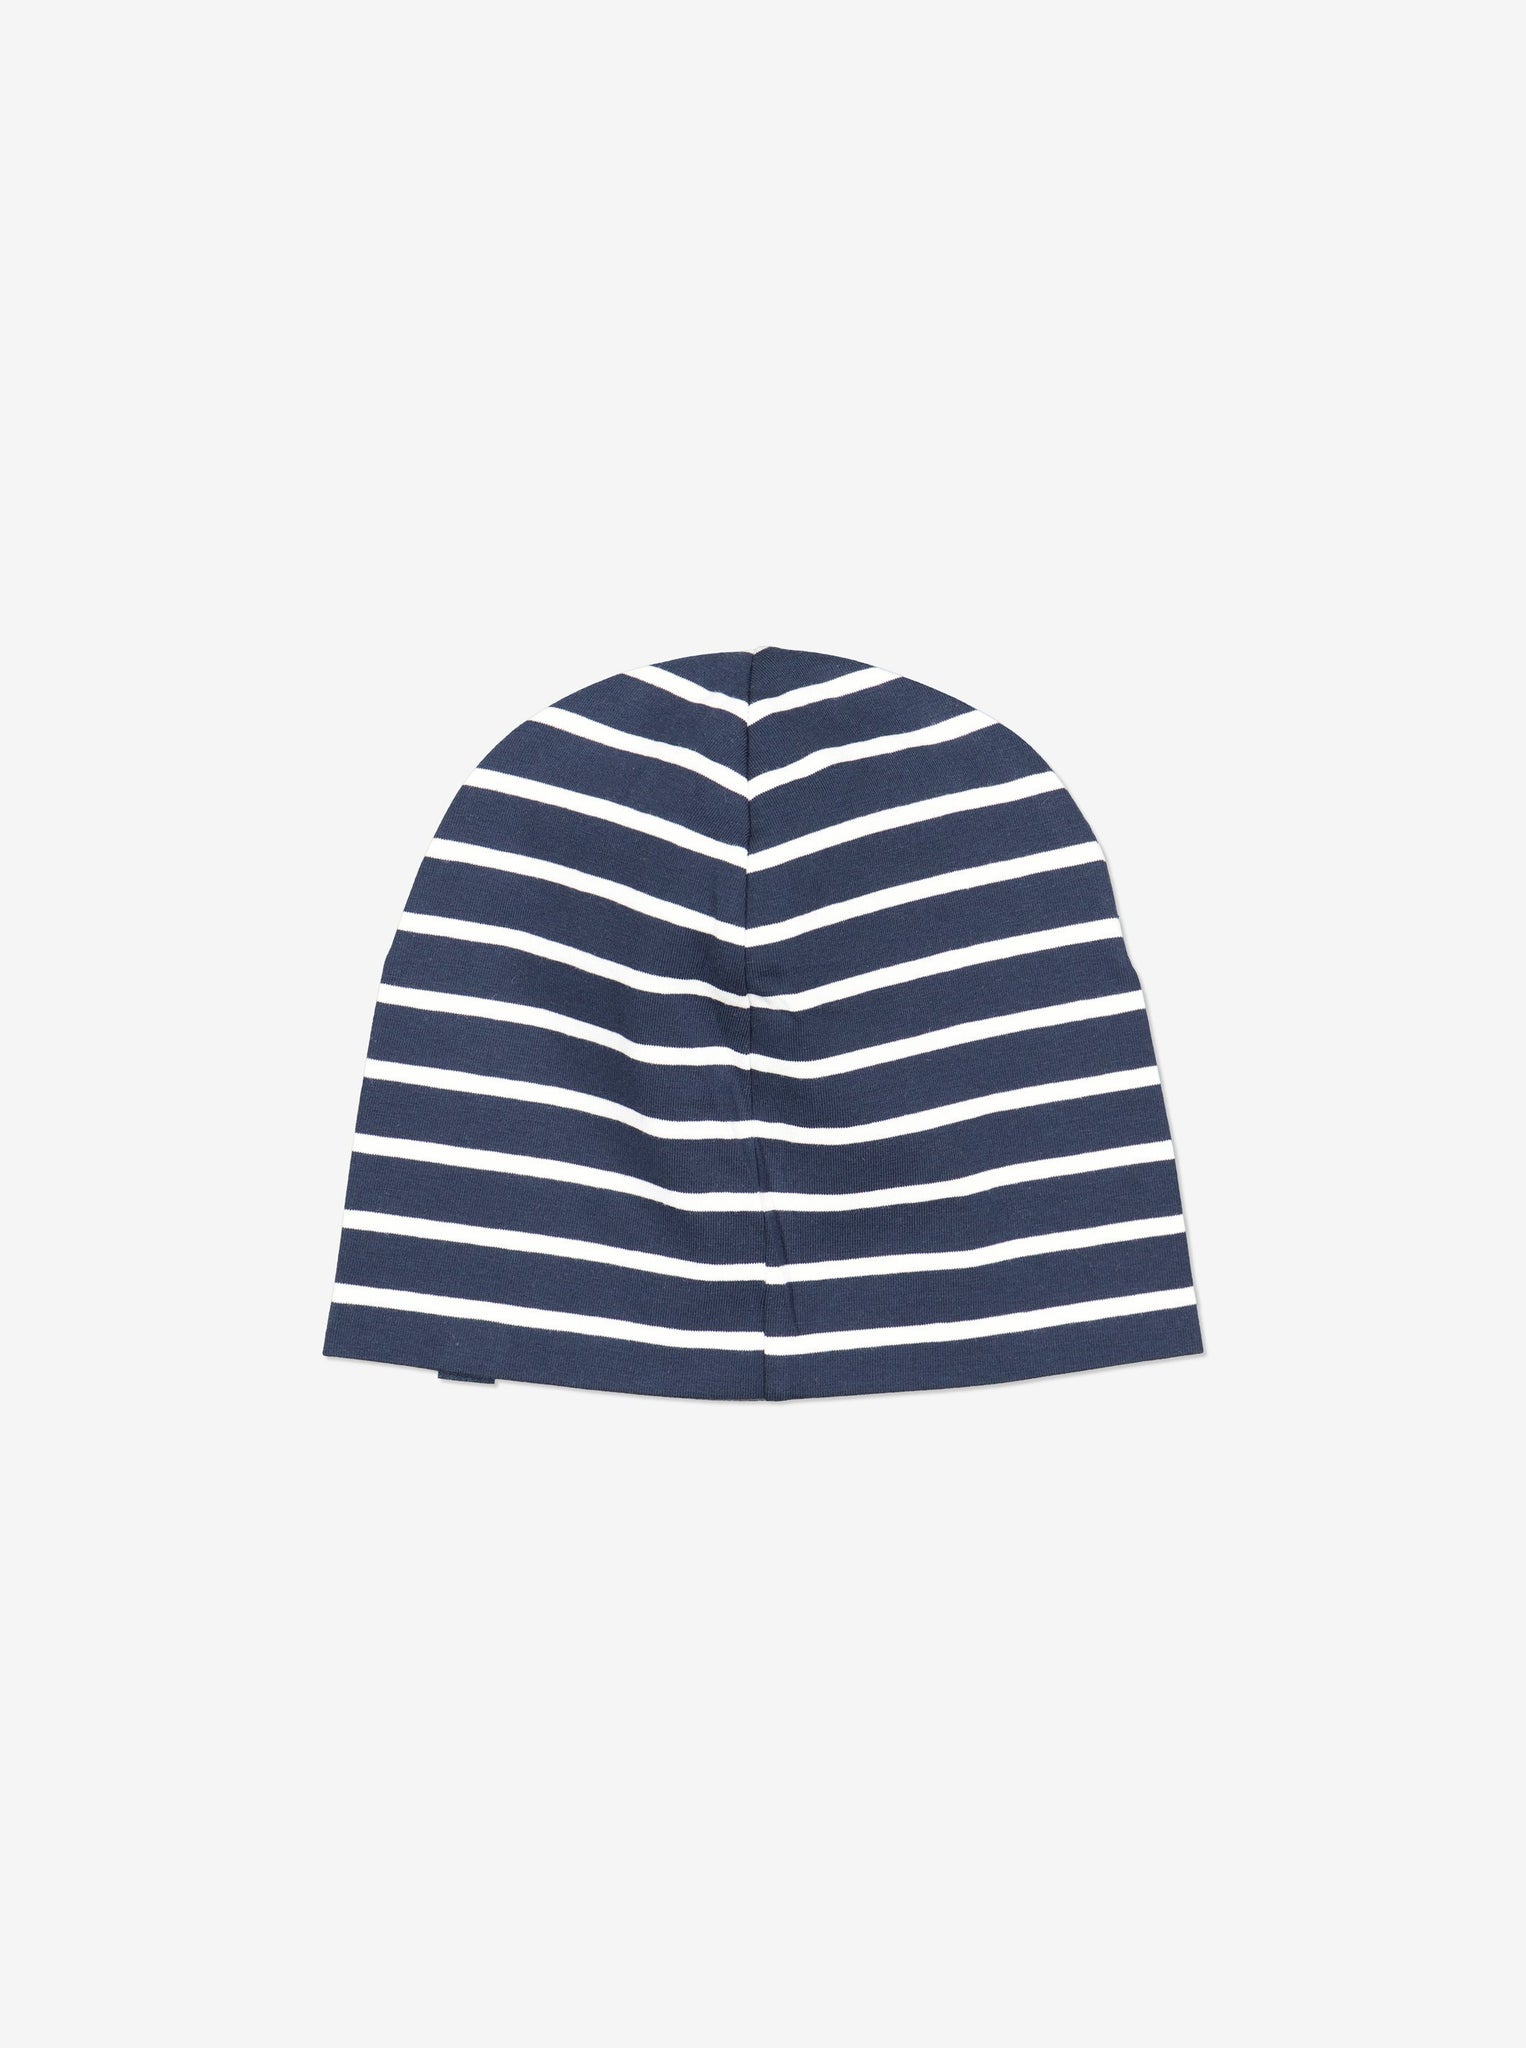 Striped Navy Kids Beanie Hat from Polarn O. Pyret Kidswear. Warm kids beanie